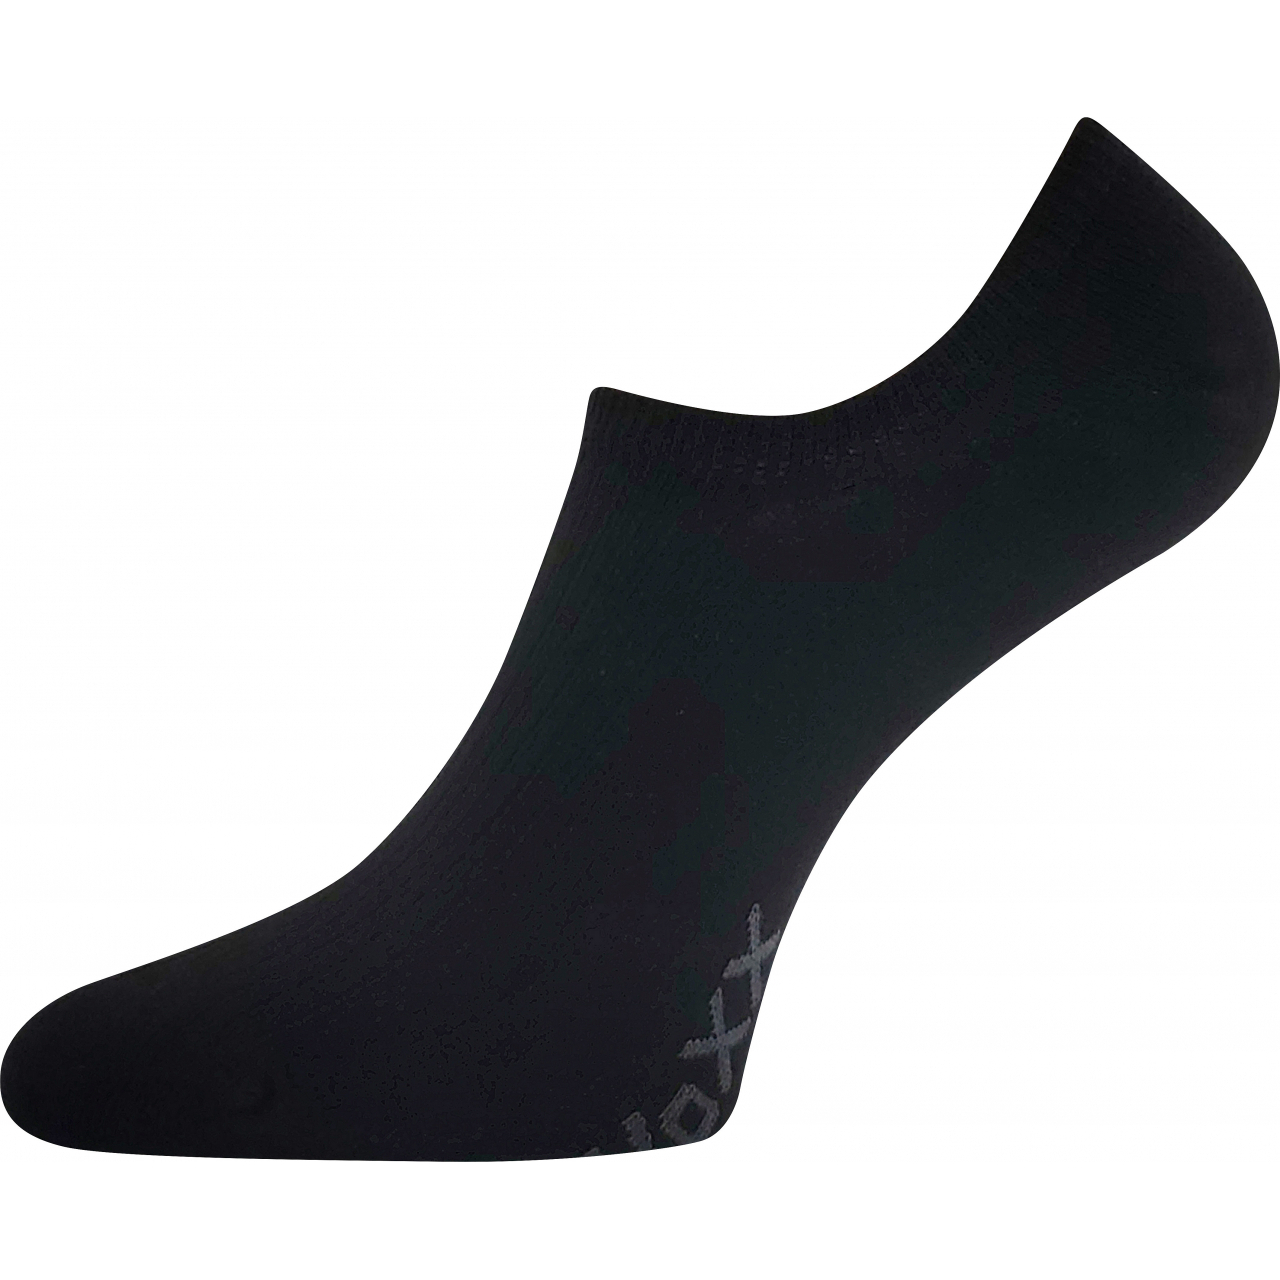 Ponožky unisex krátké Voxx Hagrid - černé, 43-46